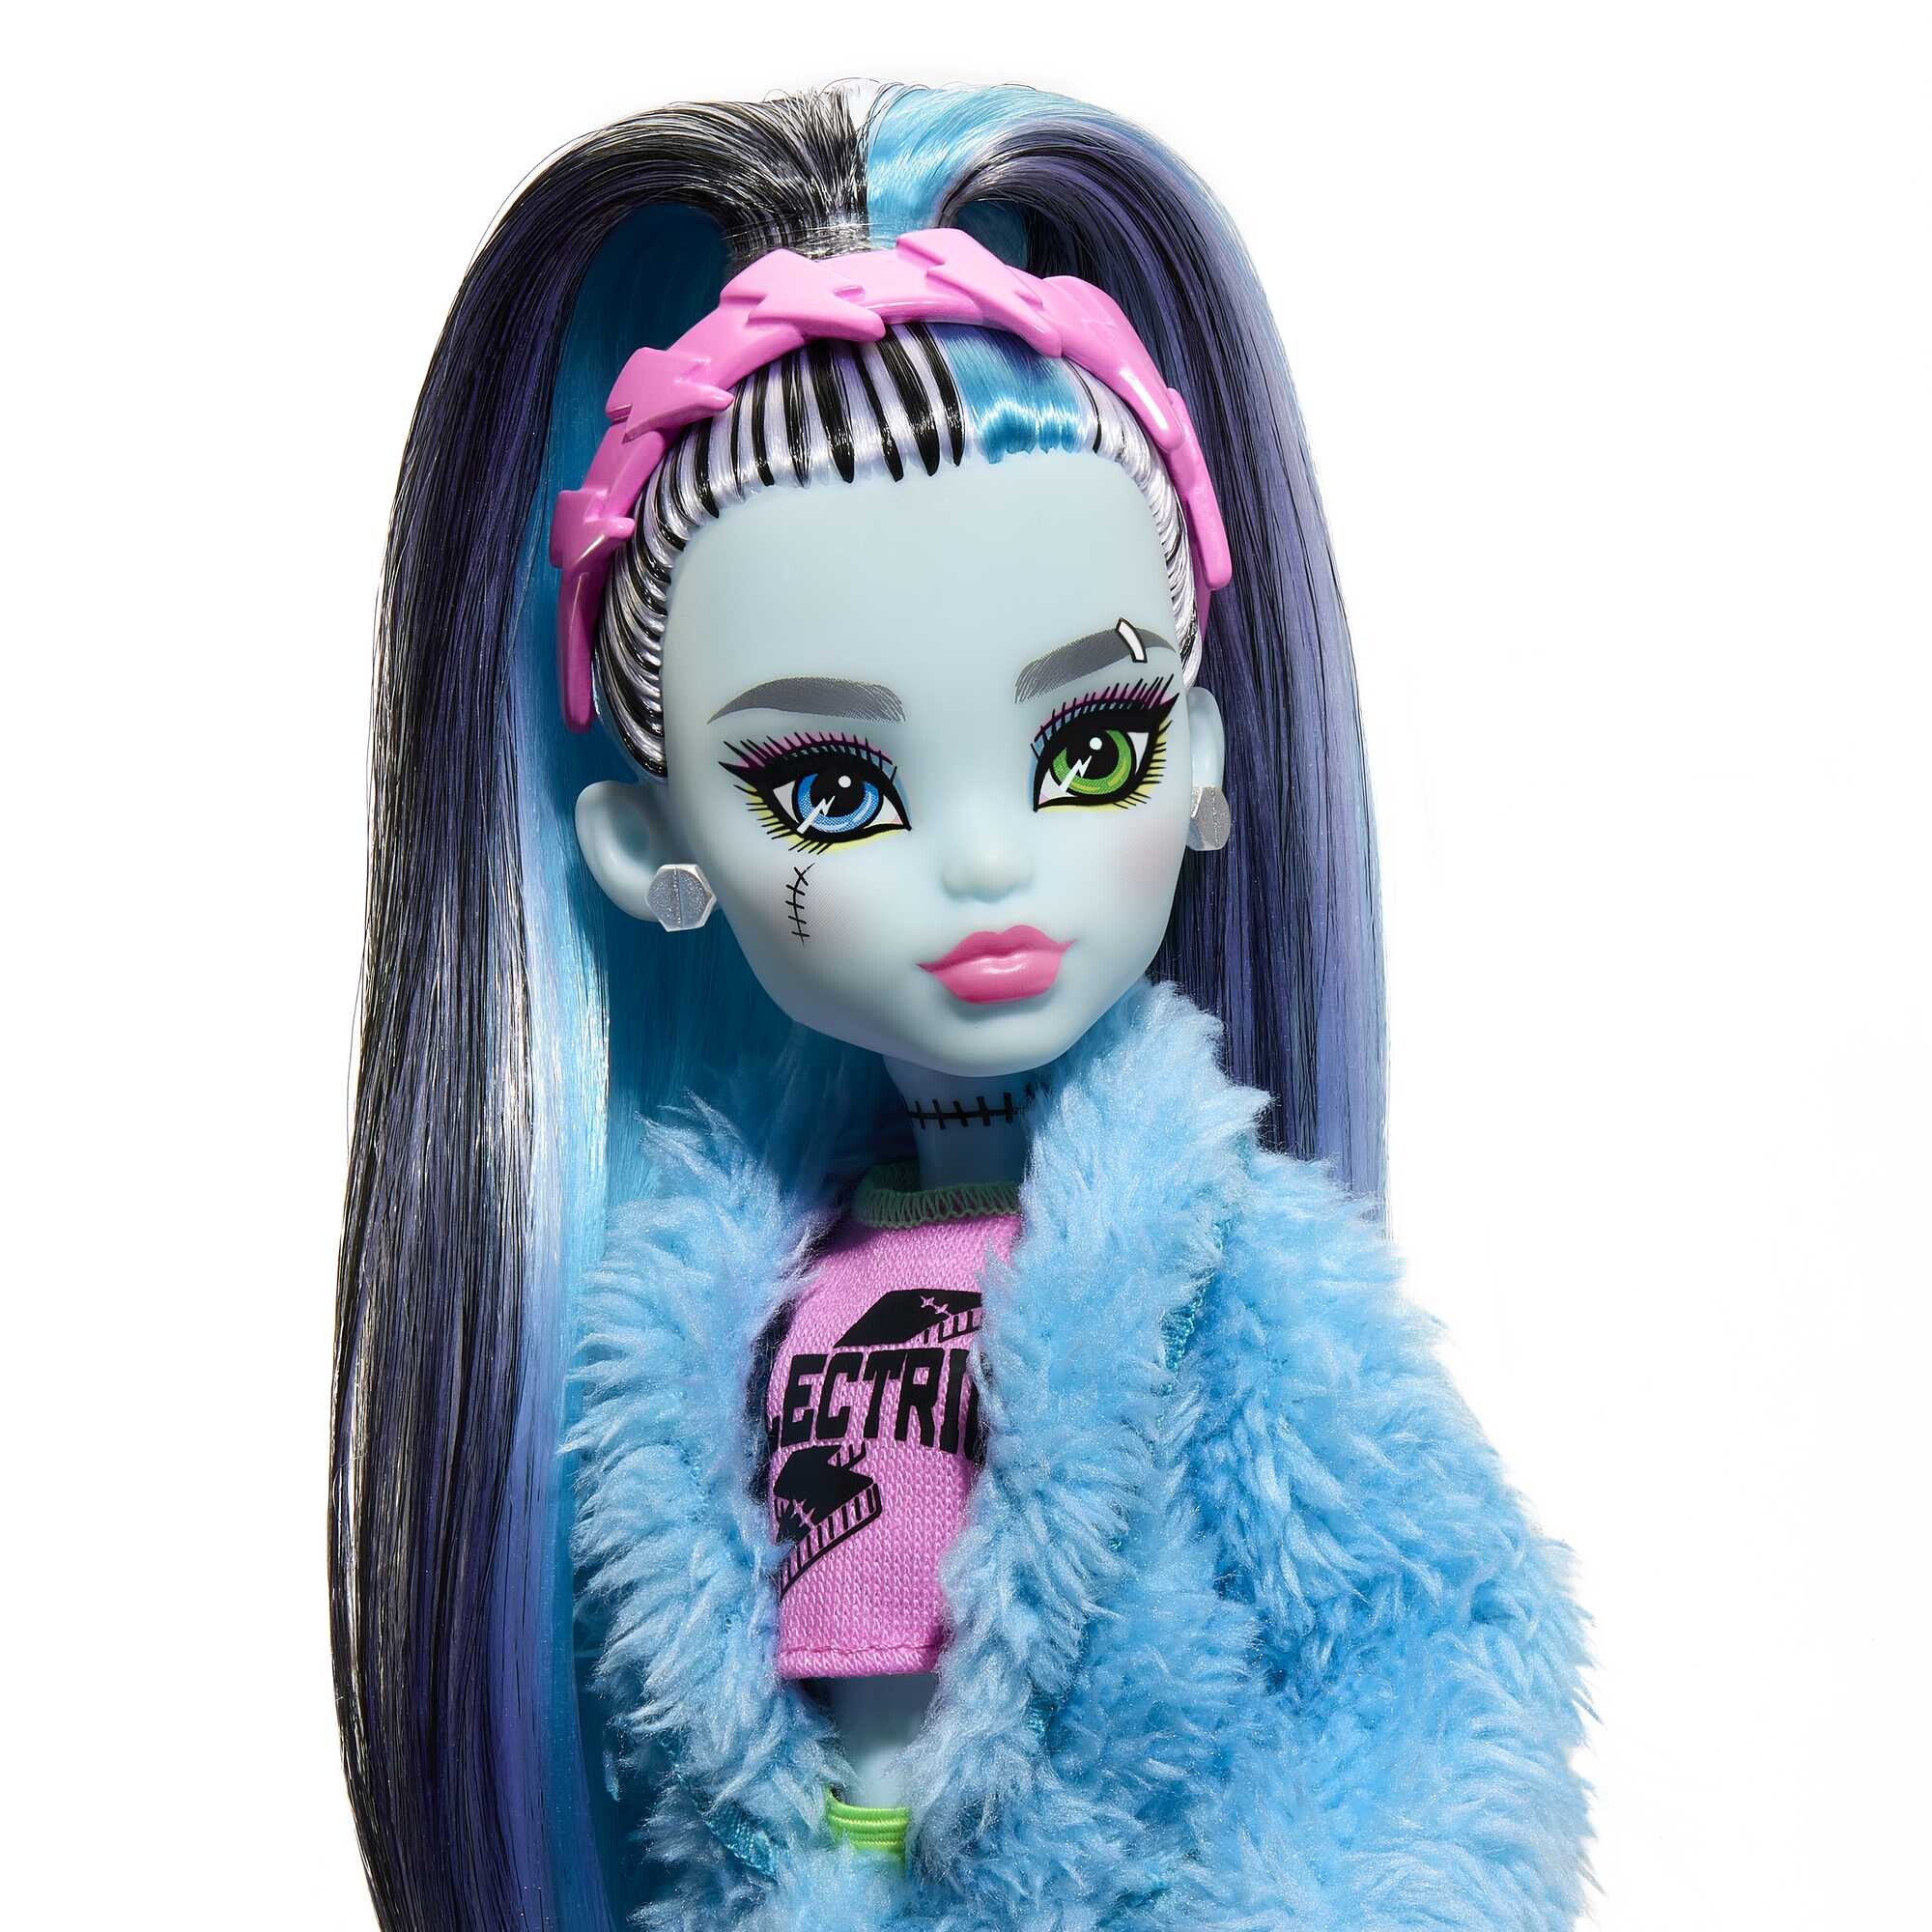 Monster high - frankie stein creepover party, bambola con outfit dettagliato e accessori per il pigiama party, cucciolo watzie incluso - Monster High